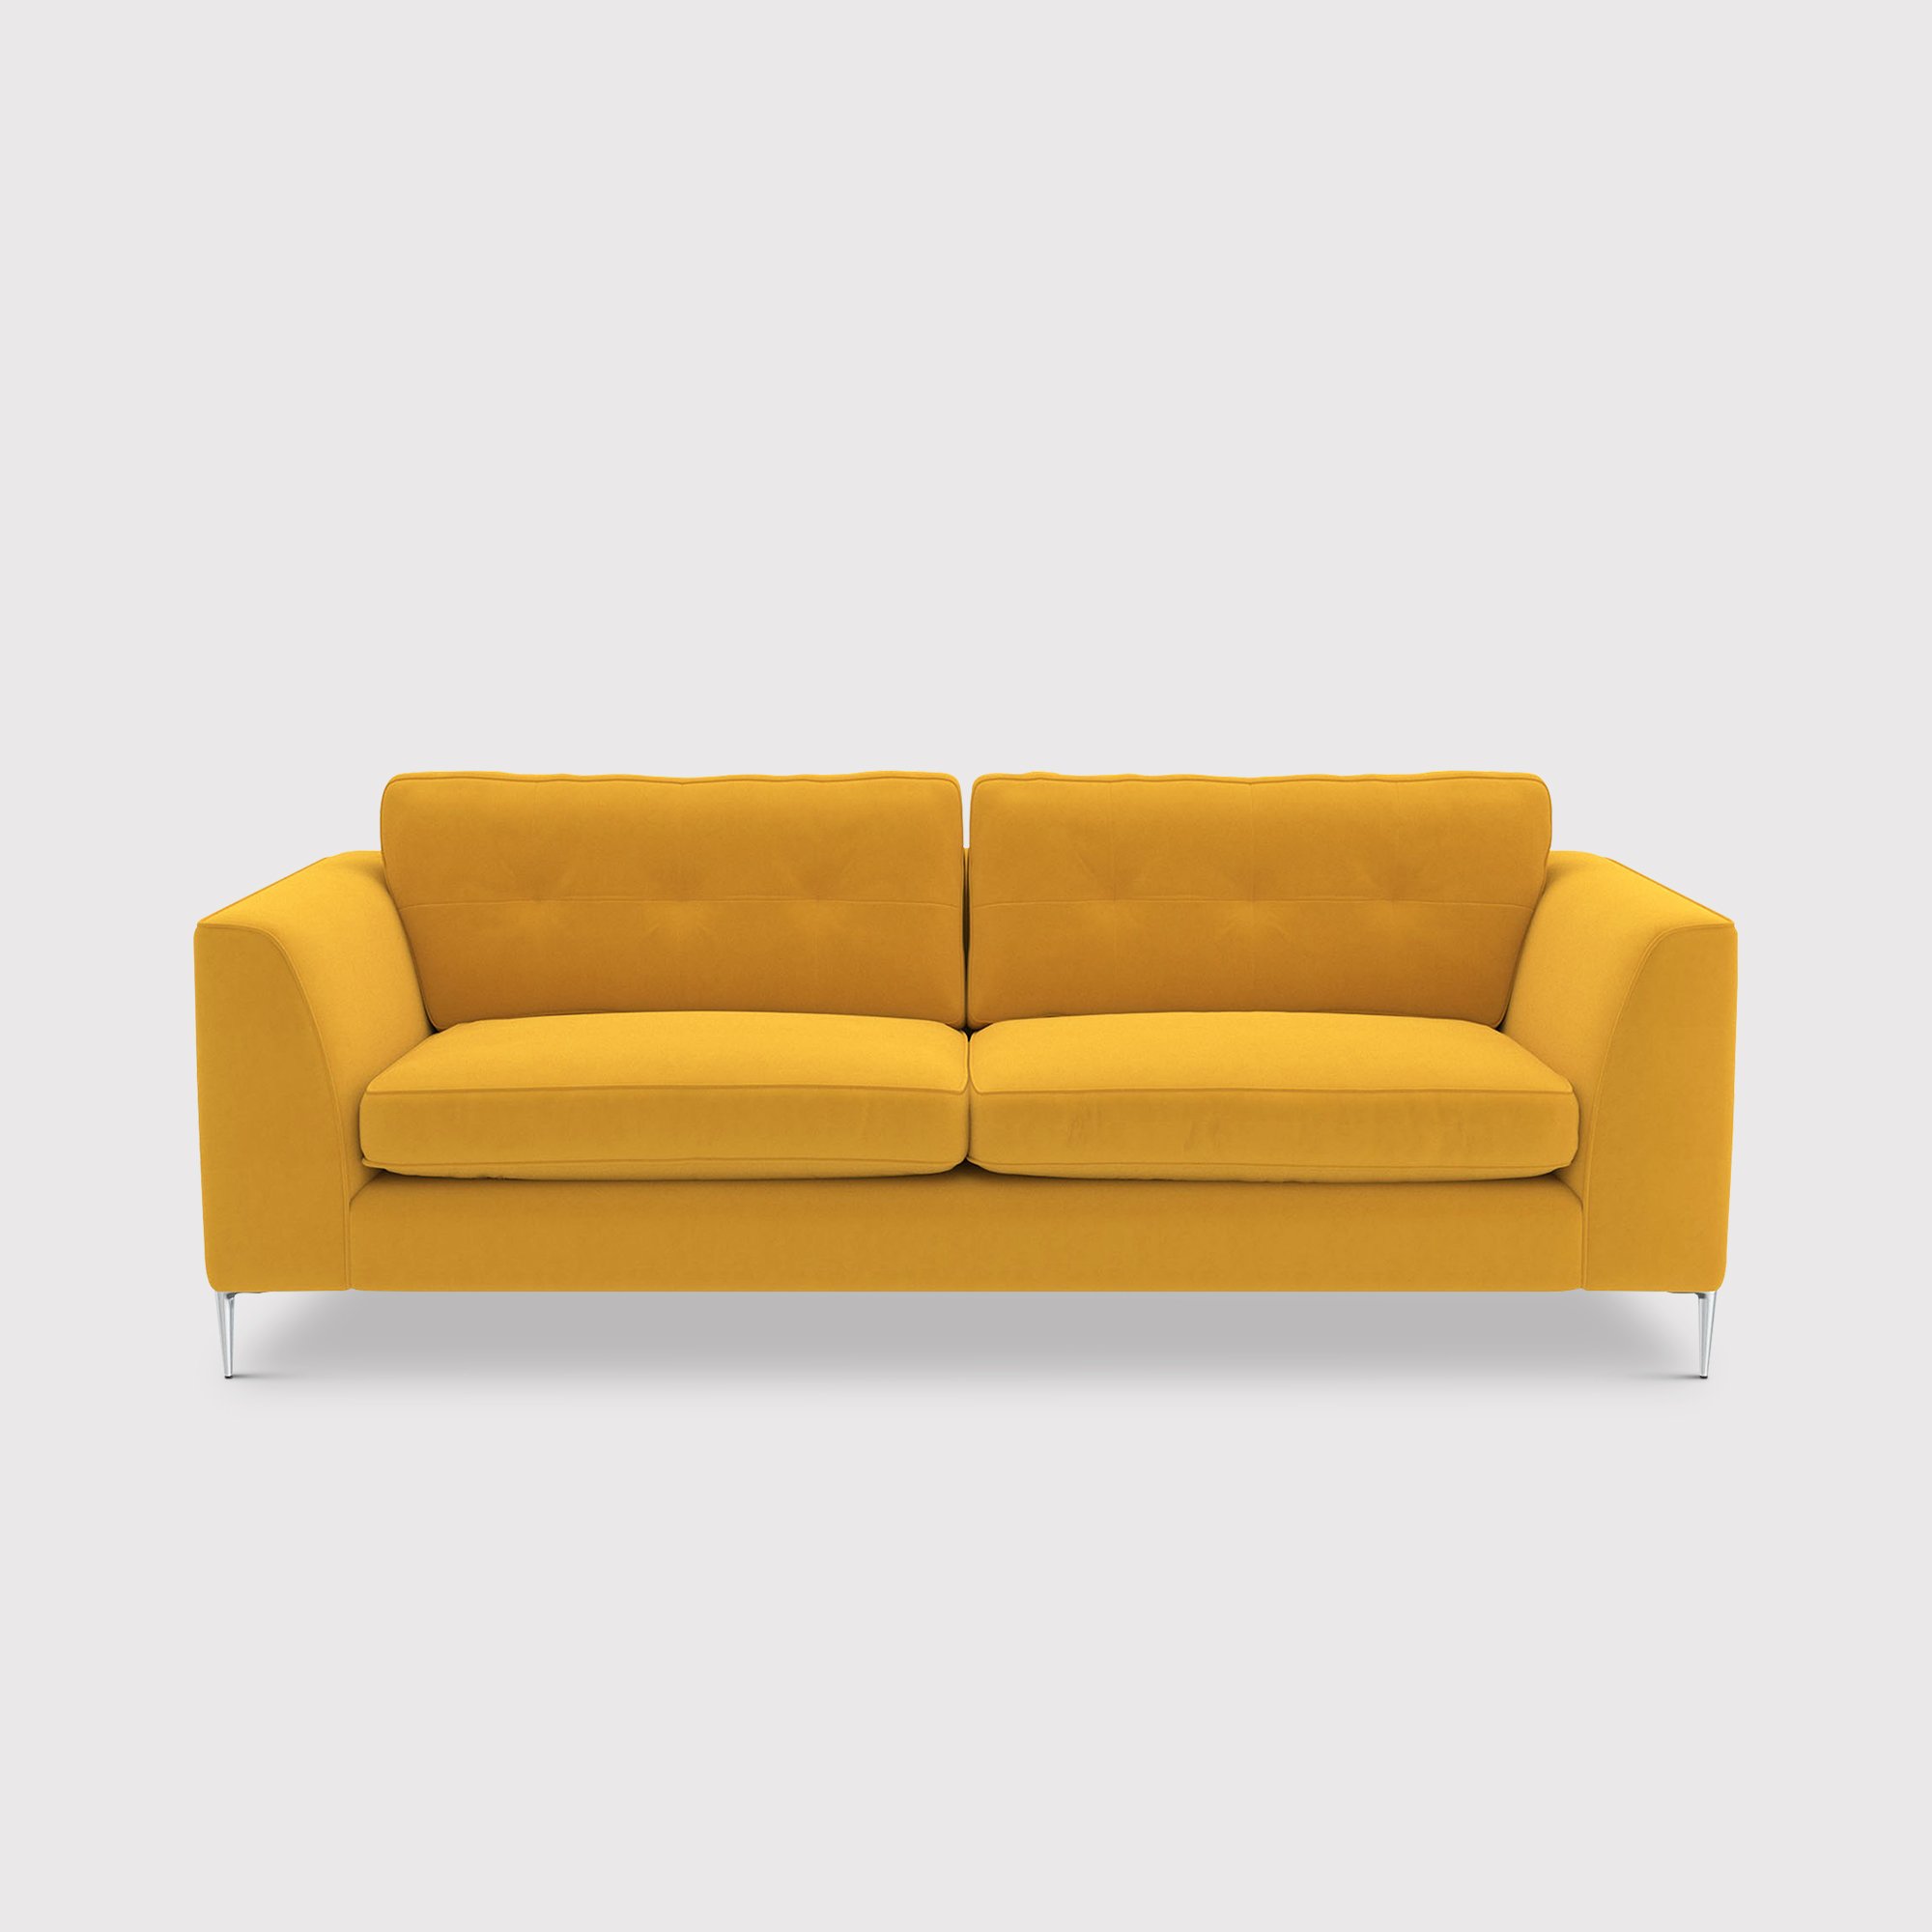 Conza Extra Large Sofa, Orange Fabric | Barker & Stonehouse